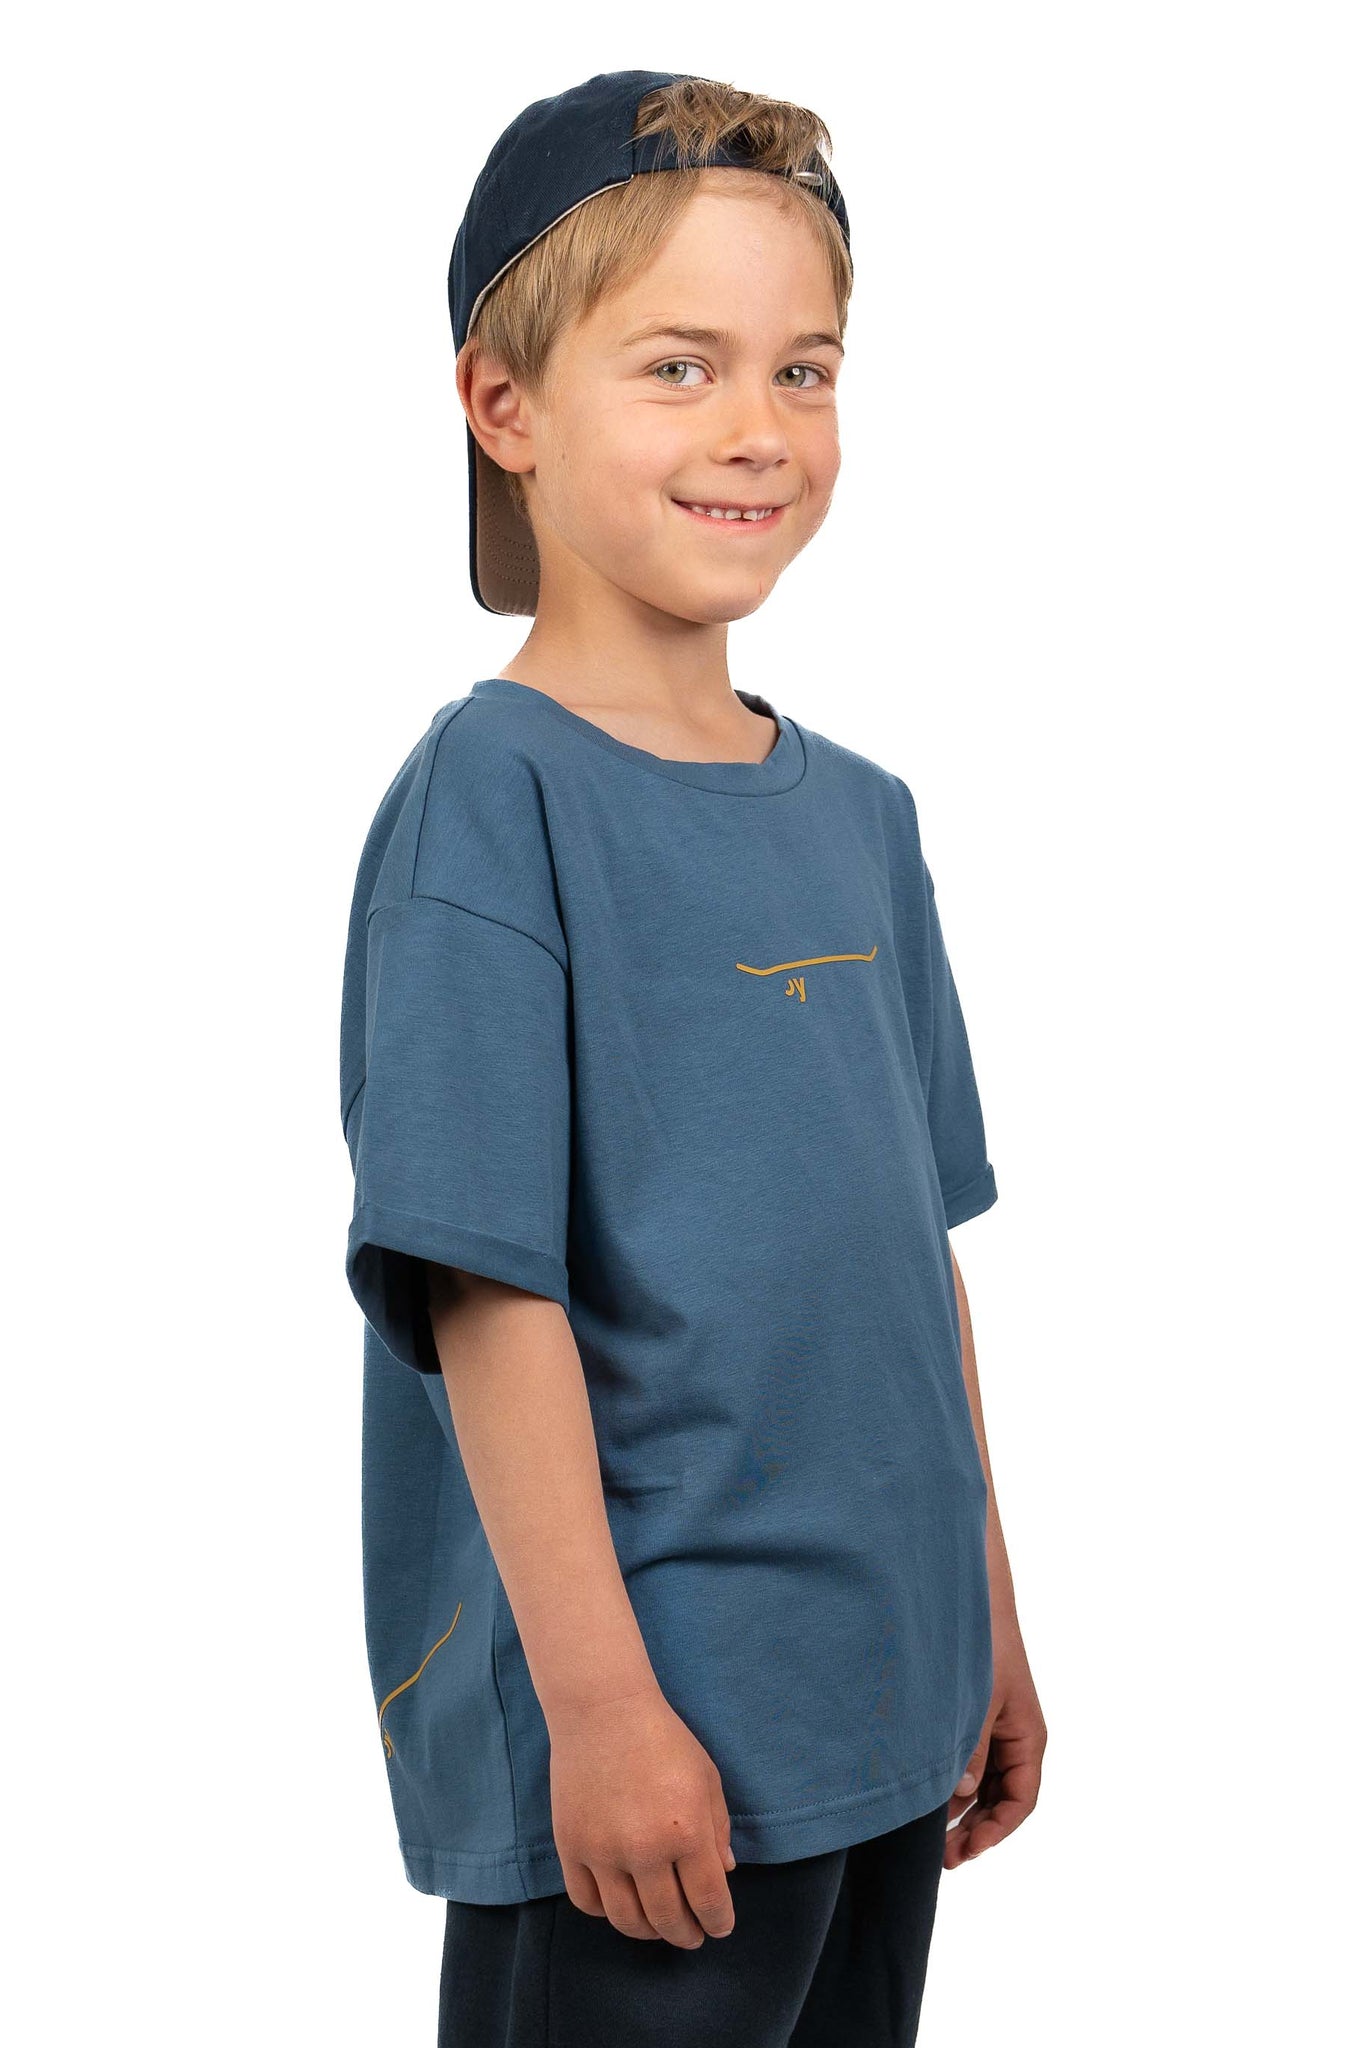 OLSØY T-shirt, barn, mellom blå